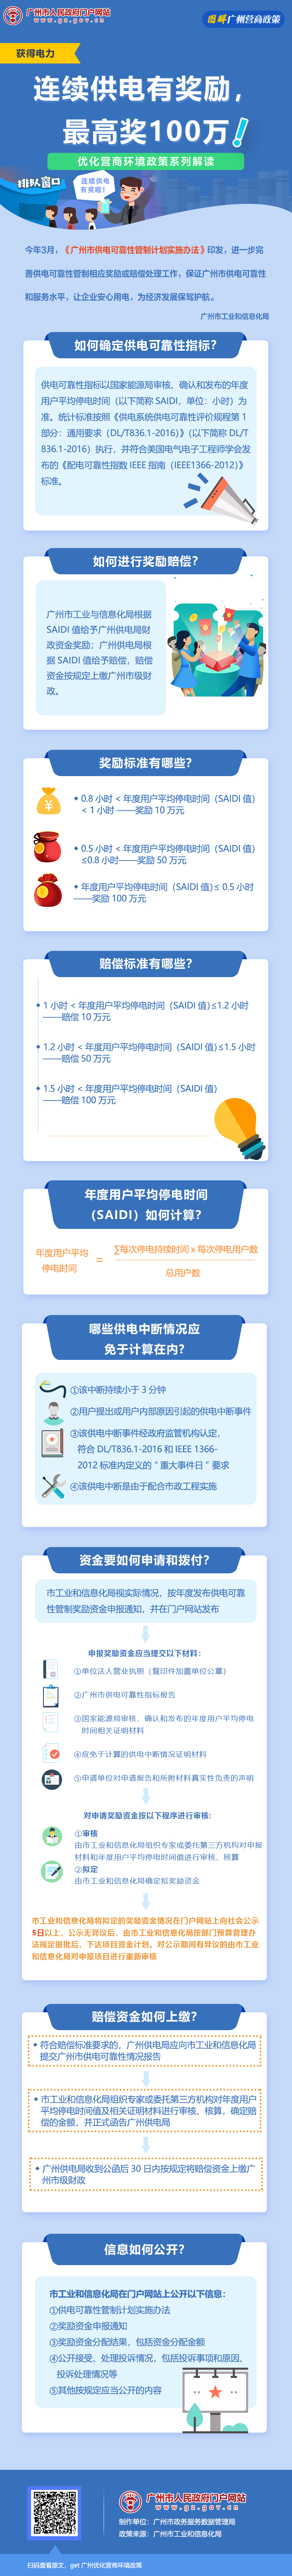 6广州市供电可靠性管制计划实施办法.jpg